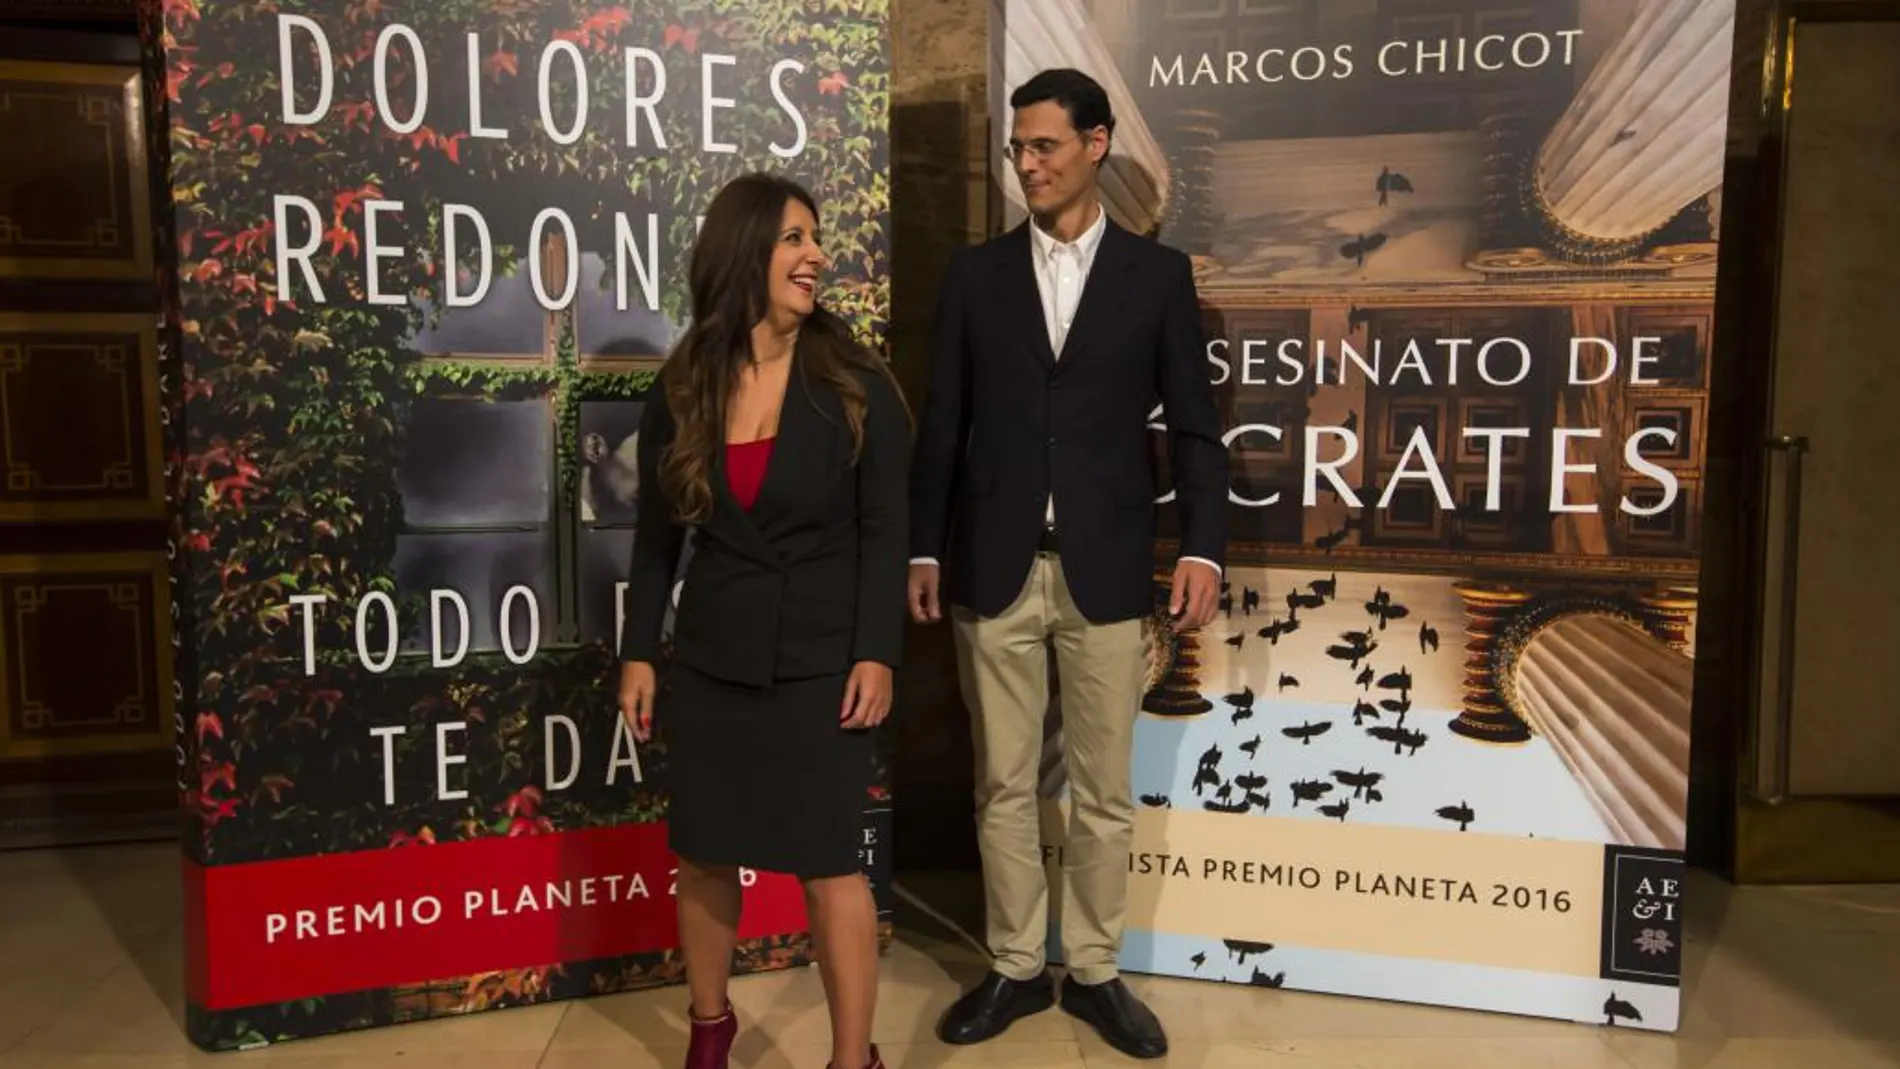 La ganadora del premio Planeta Dolores Redondo y el finalista Marcos Chicot